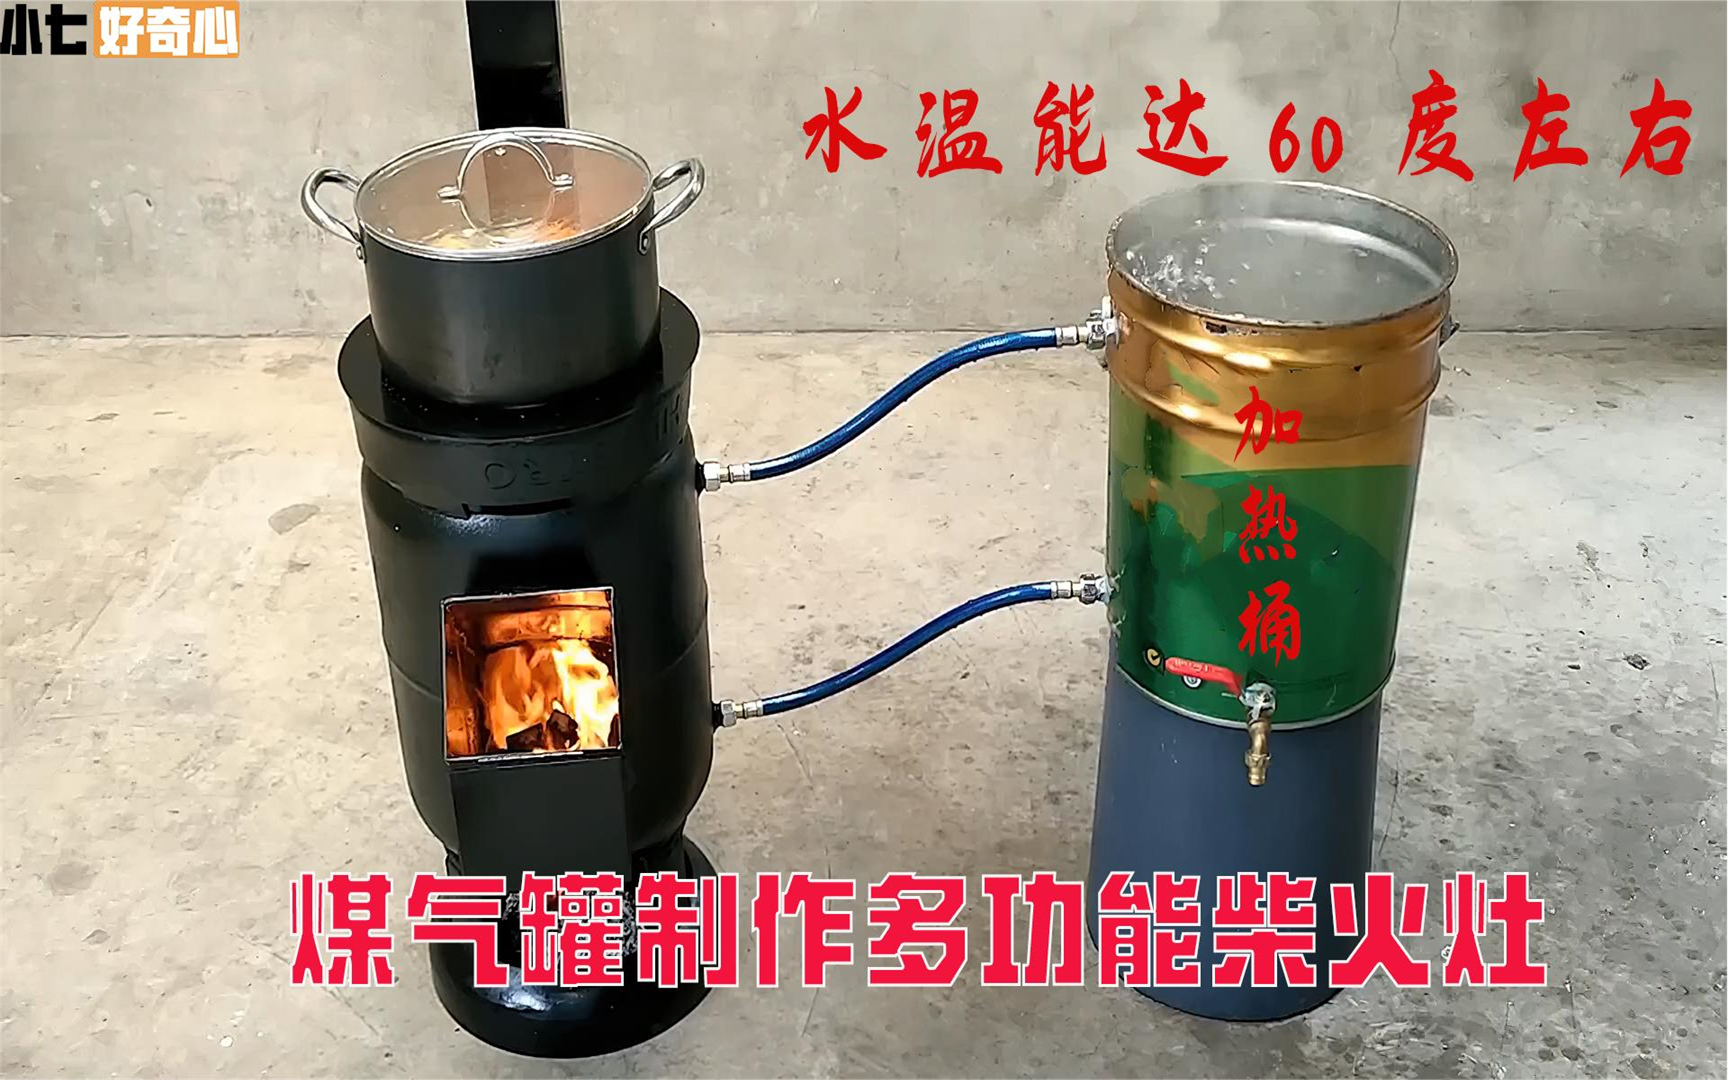 废旧煤气罐制作多功能柴火灶,做饭的同时还能烧水,创意堪称绝妙